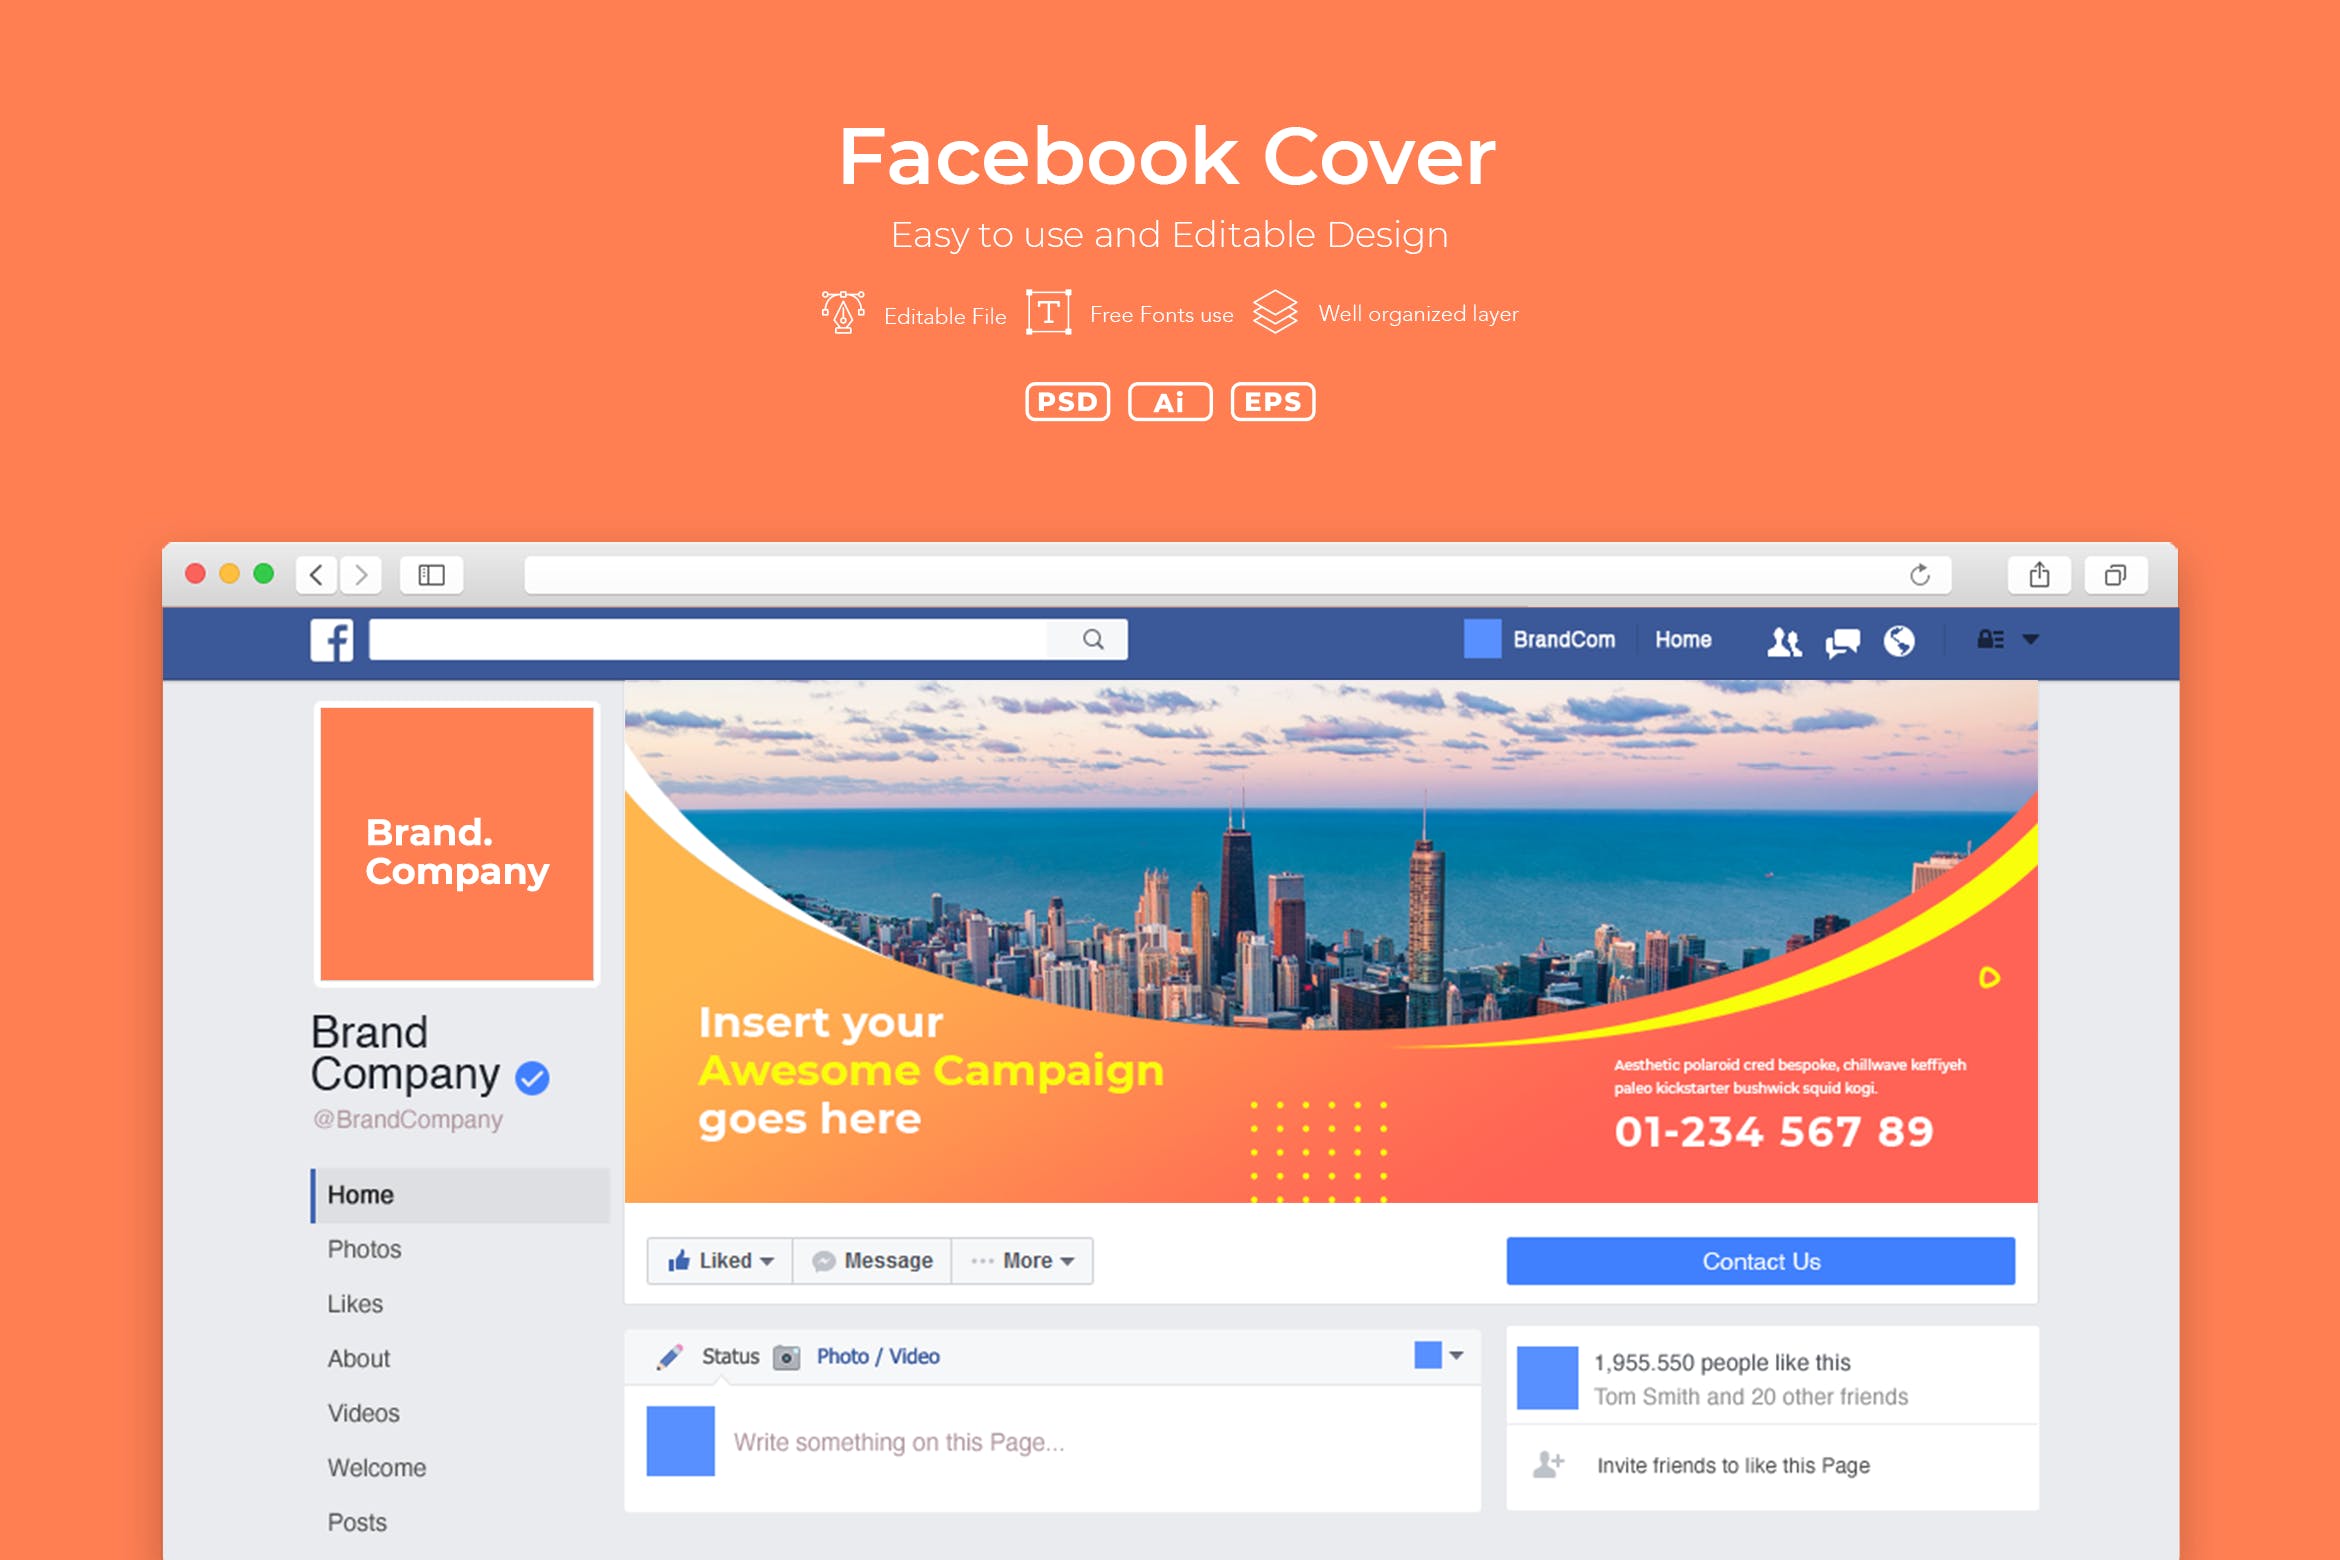 企业Facebook账号主页封面设计模板素材库精选v2.3 ADL Facebook Cover.v2.3插图